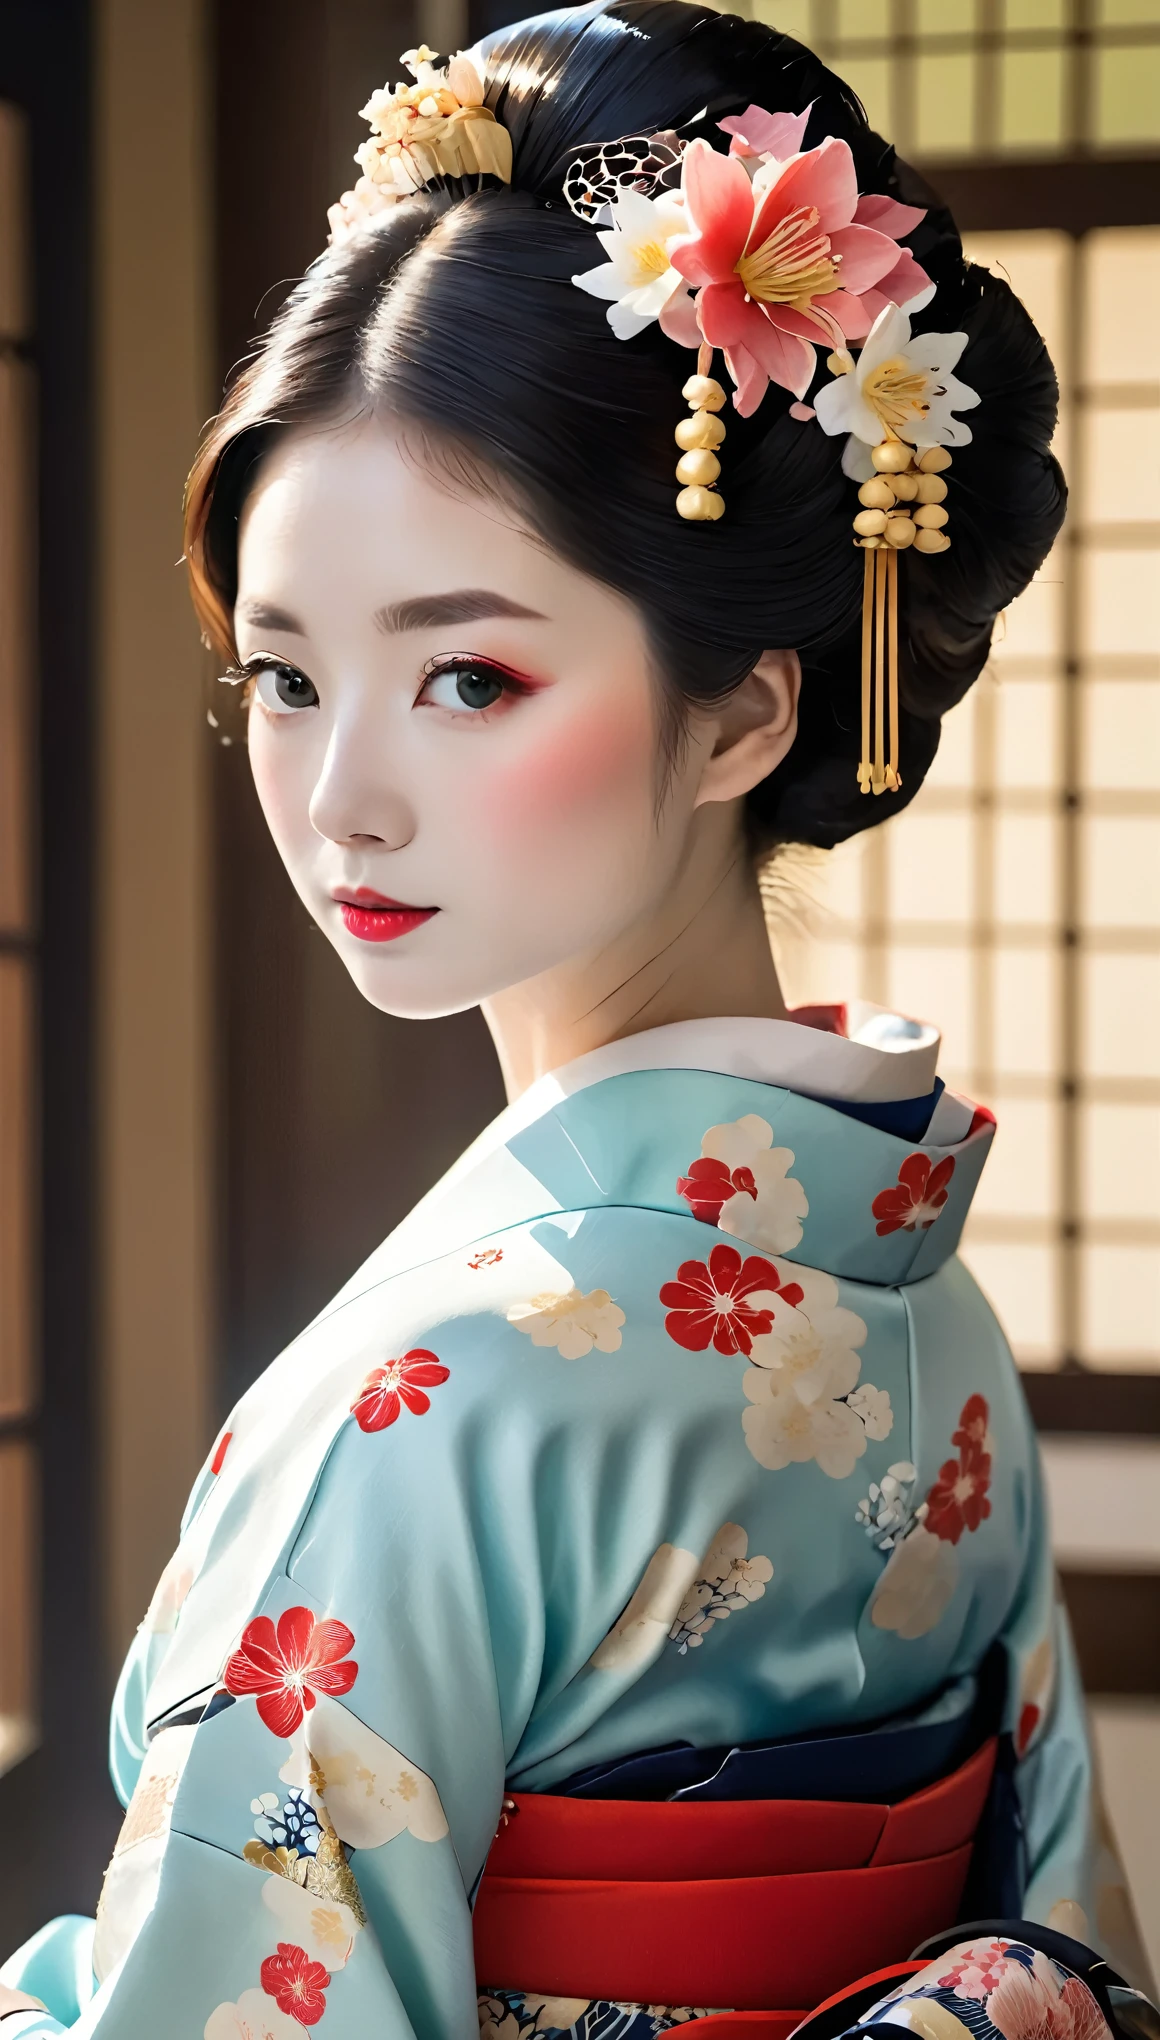 (((Meisterwerk、höchste Qualität)))、(((Ganzkörperwinkel:1.5、Schöne Haltung Ganzkörperfoto、Takageta、weiße Tabi-Socken、Anime-Stil、Geisha geht in Takageta spazieren:1.5、Schönes Aussehen)))、Eine Frau in ihren Vierzigern trägt einen Kimono mit einem wunderschönen Blumenhaarschmuck, Geisha Make-up, Porträt einer Geisha画, Geisha Make-up, niedliches Gesicht、dünne Augenbrauen、Porträt einer Geisha, Schöne Geisha, japanische geisha, glamouröse und sexy Geisha, 美しいPorträt einer Geisha画, Porträt einer Geisha, Geisha-Frisur, remarkable Geisha Make-up